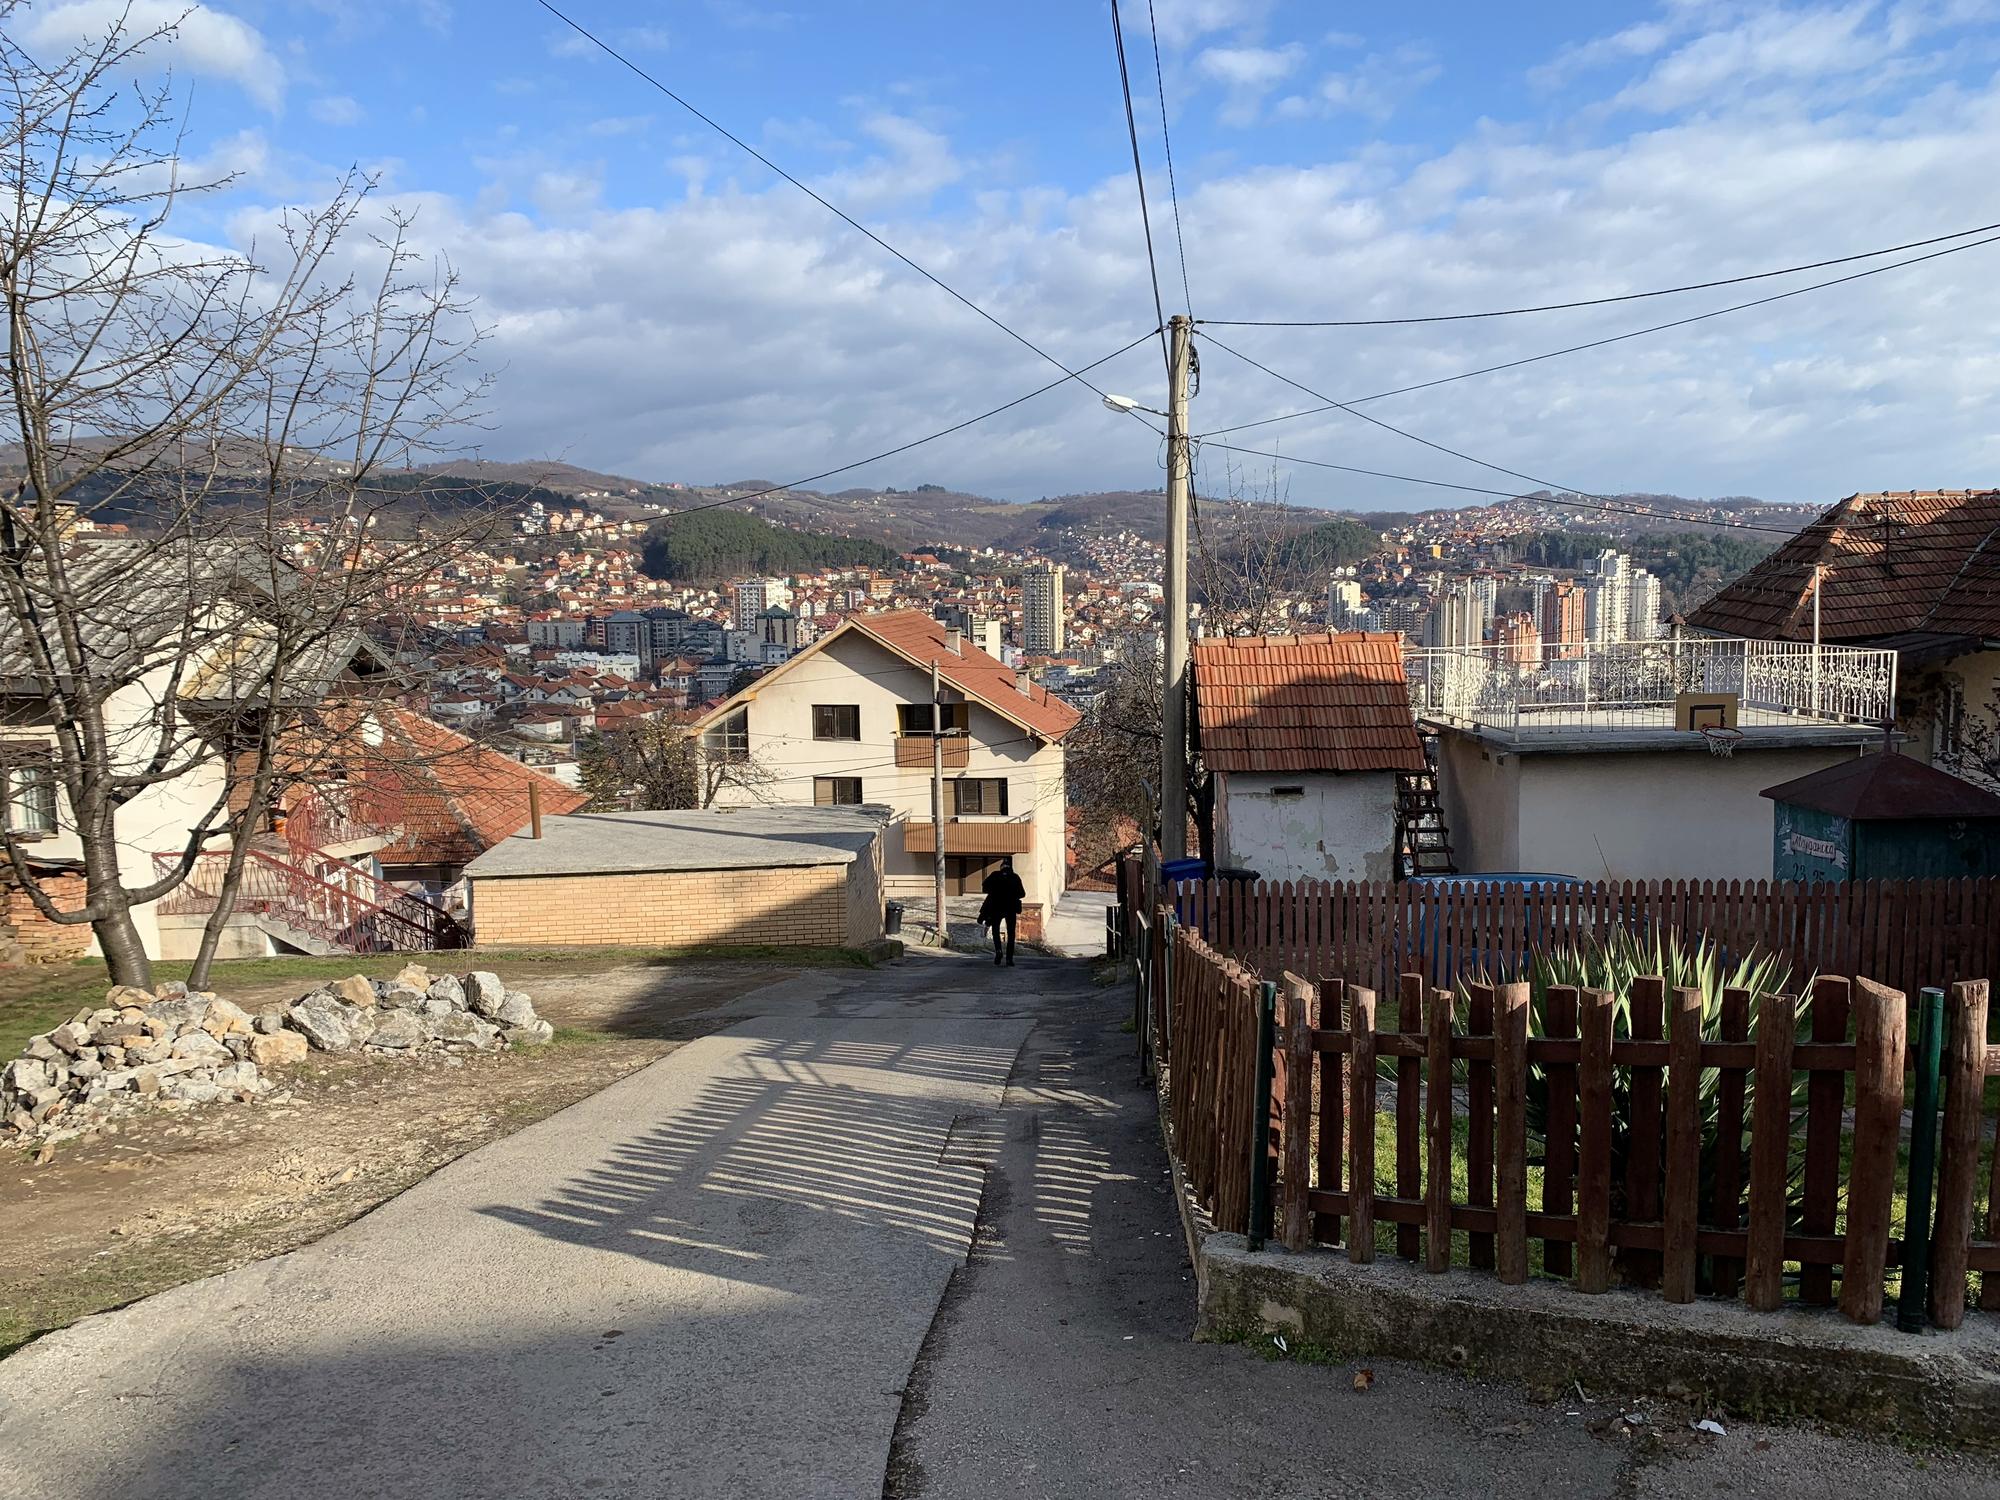 🇷🇸 Užice, Serbia, January 2023.